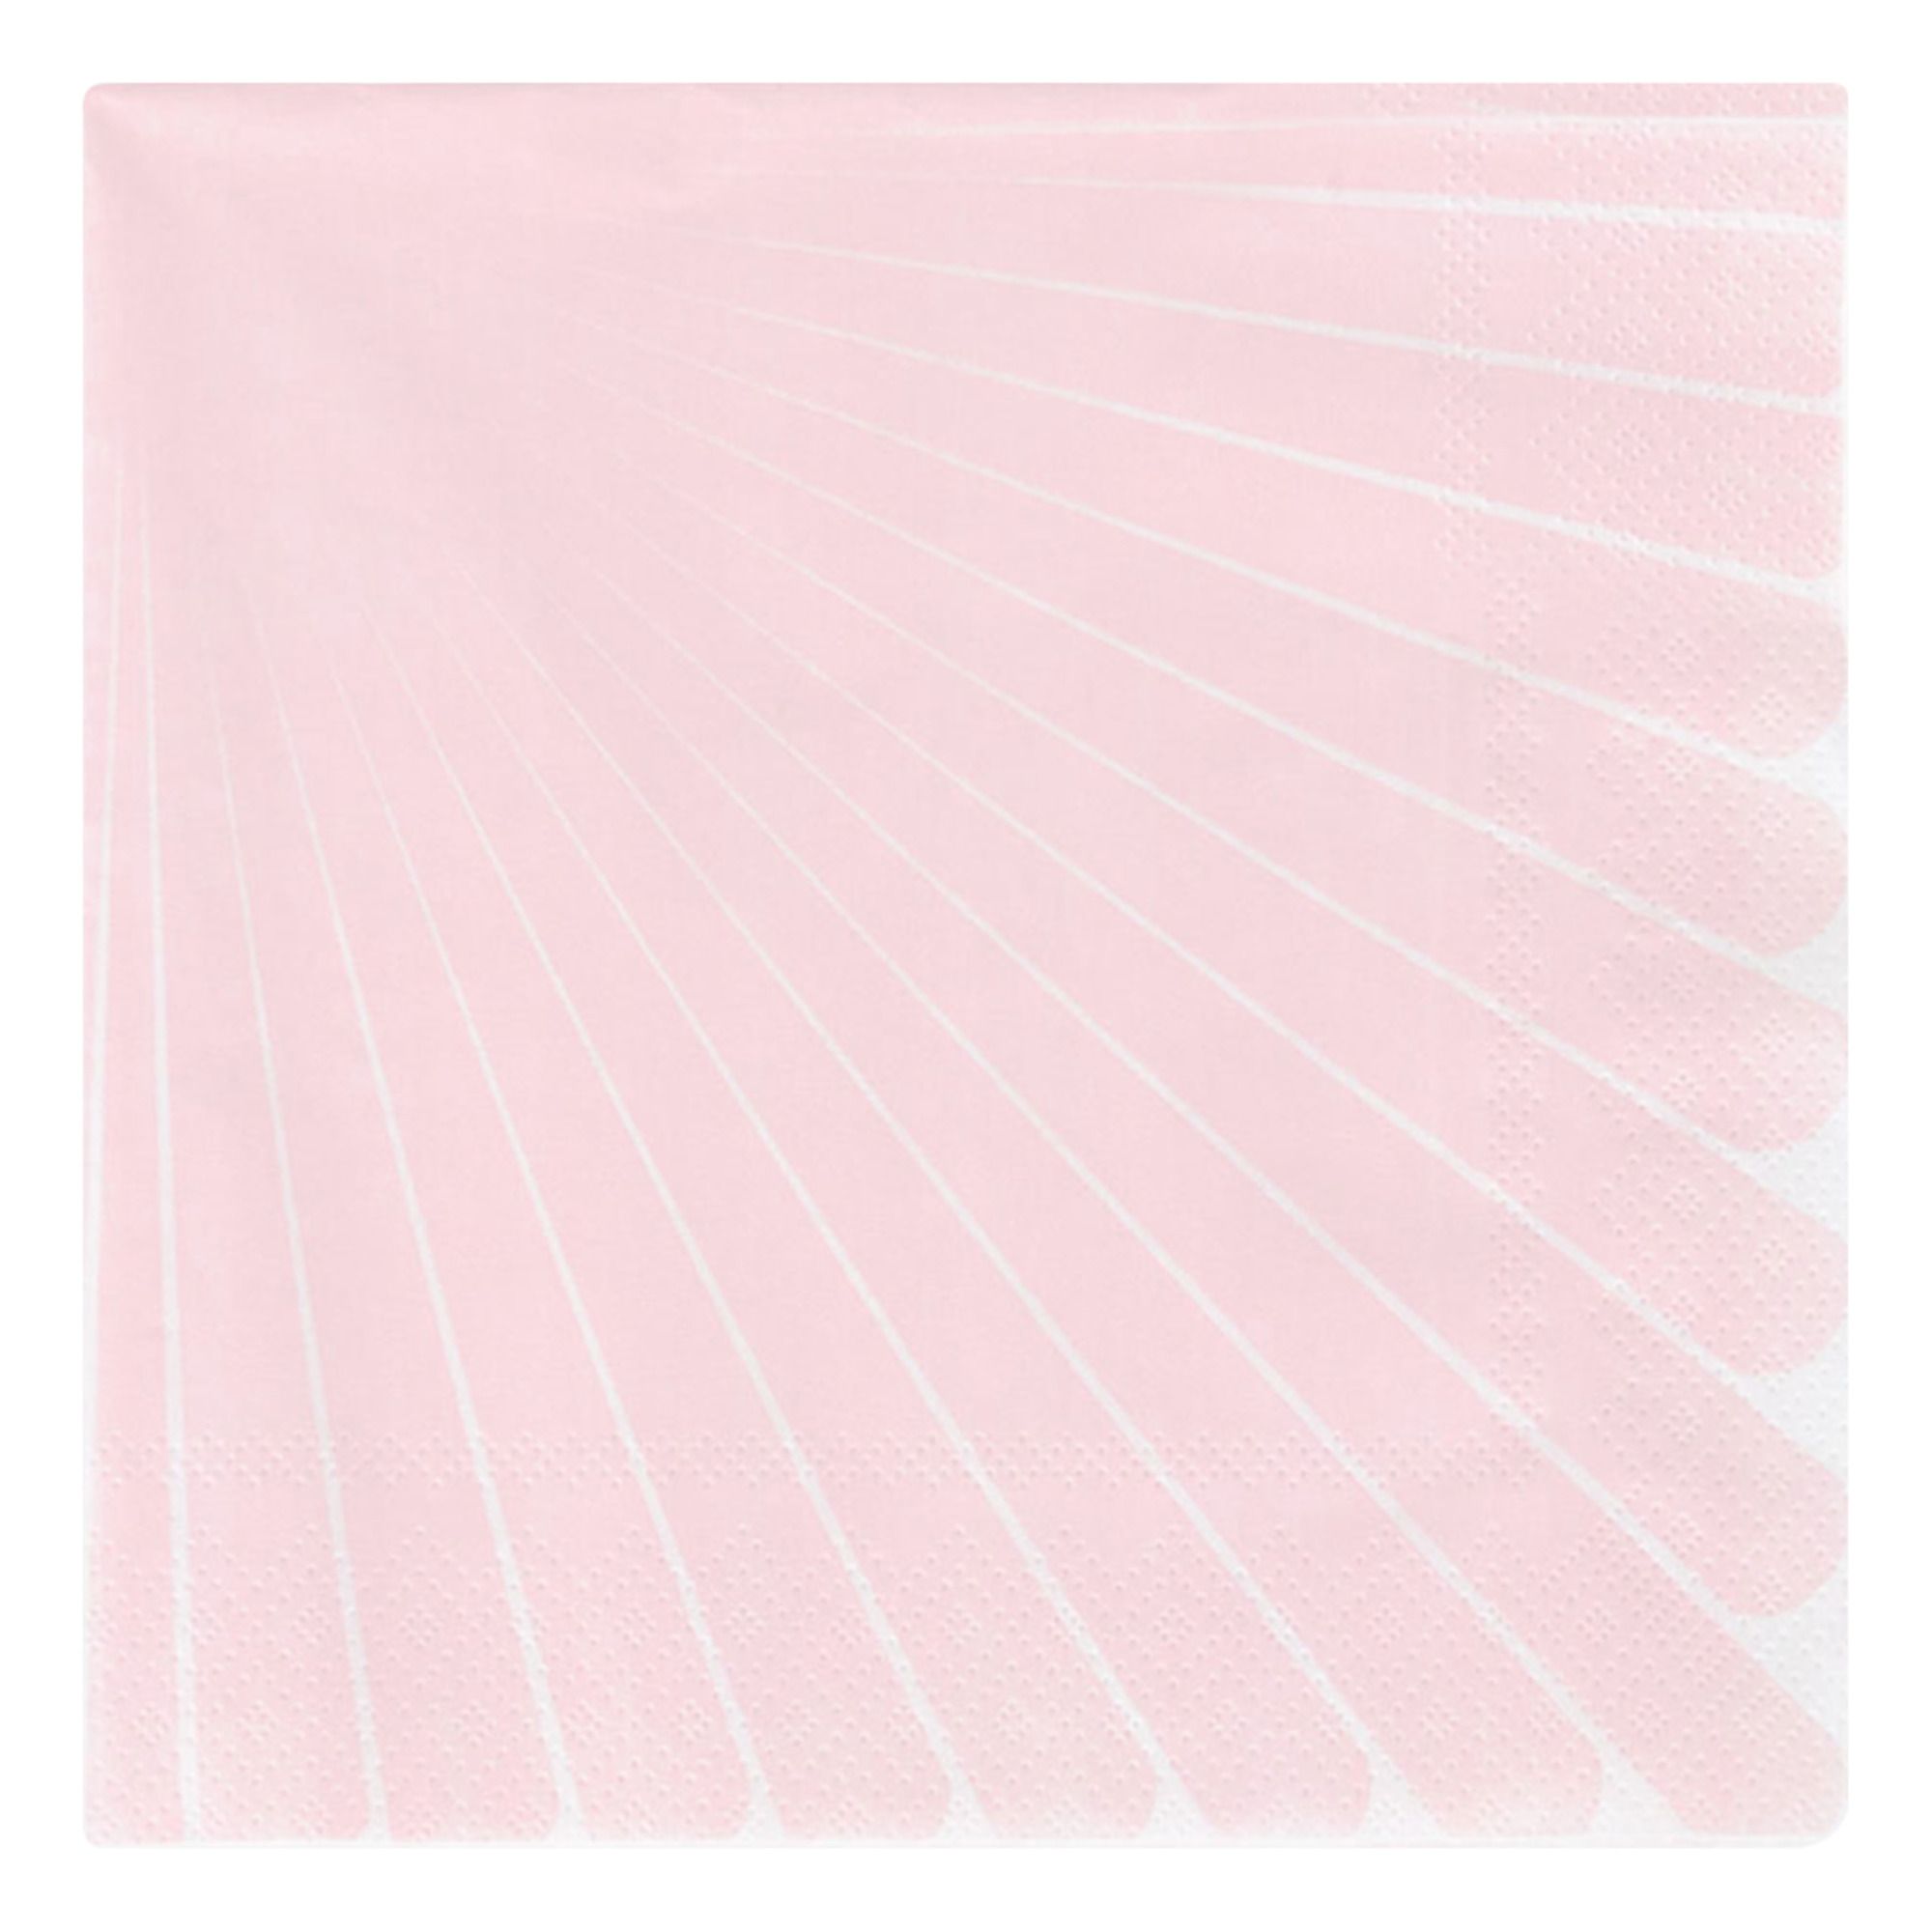 My Little Day - Serviettes en papier Pastel - Lot de 20 - Rose pâle